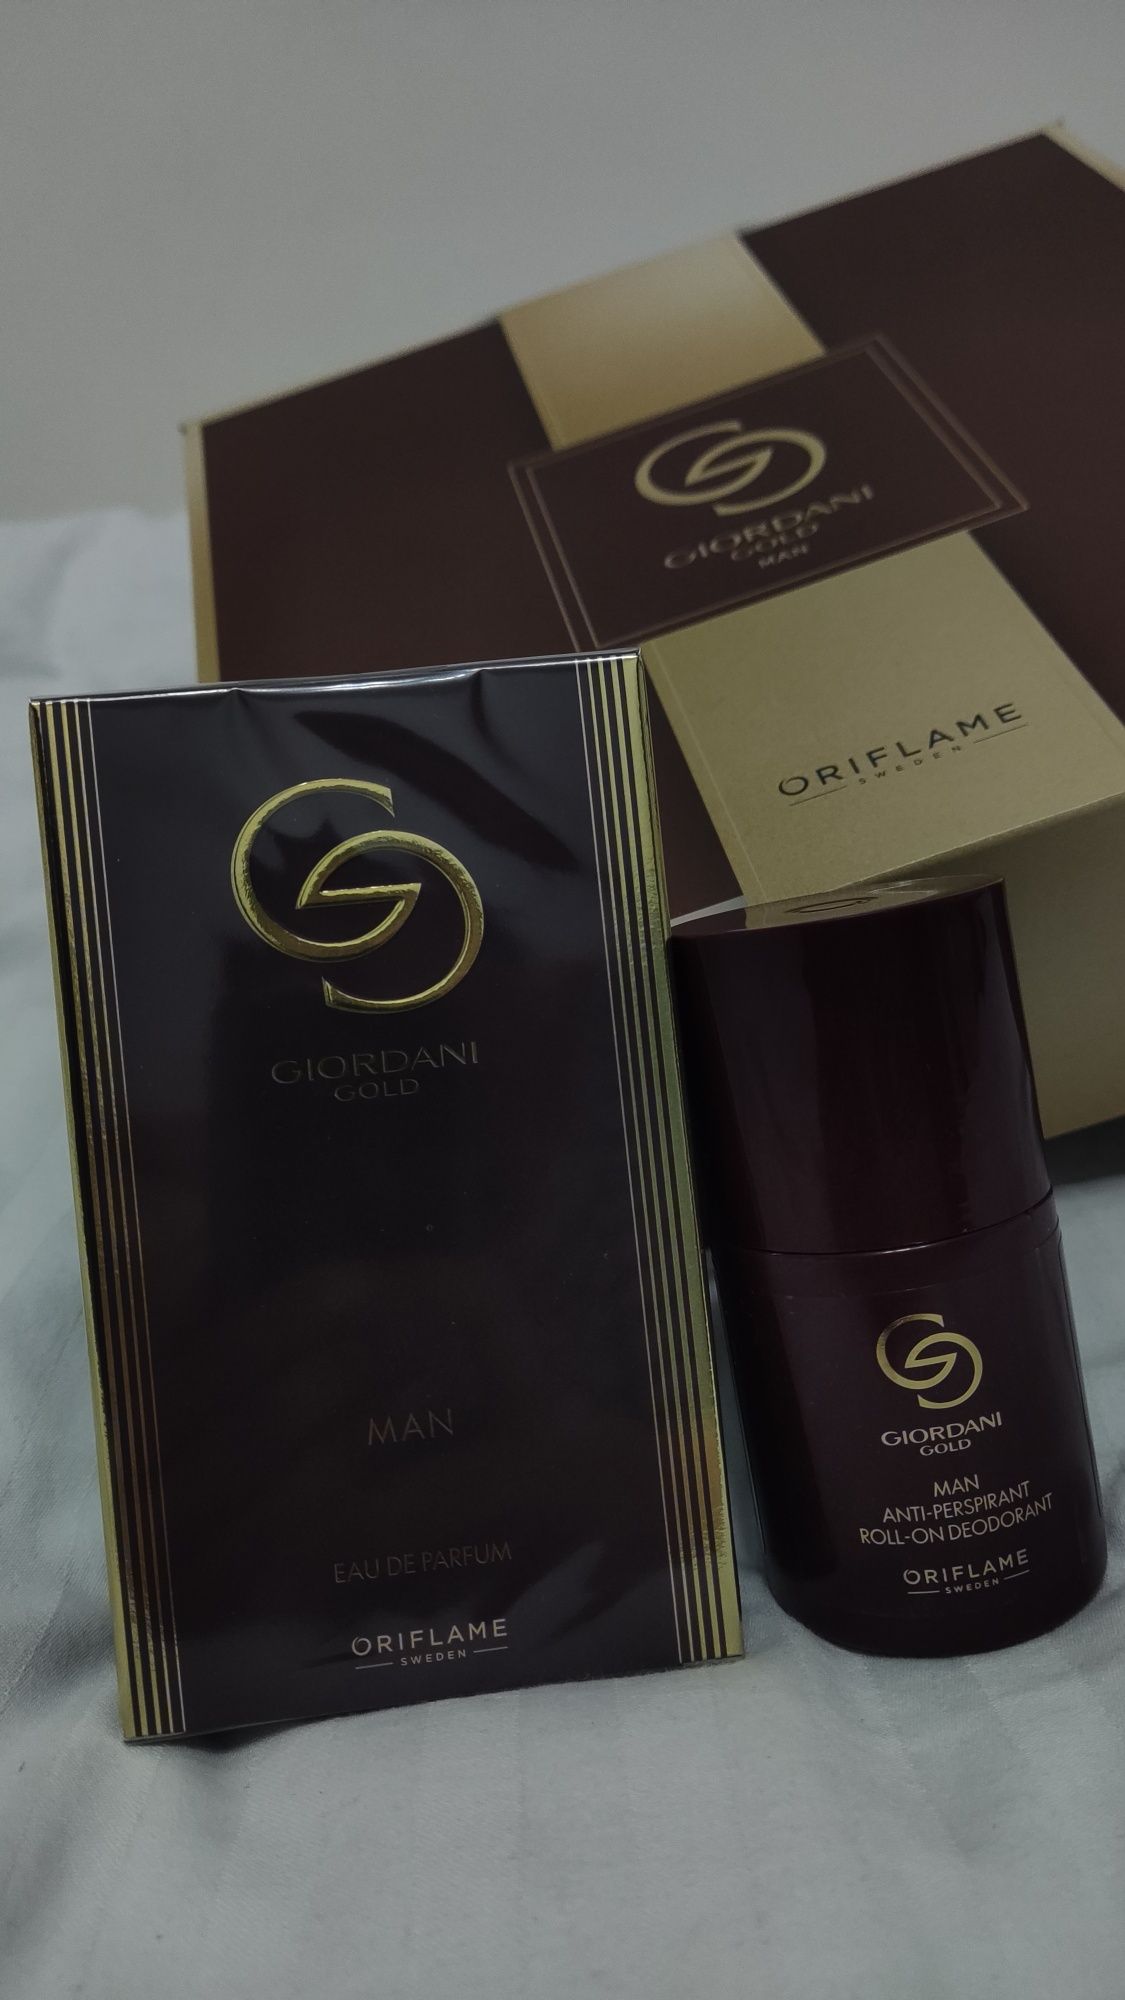 Срочно продаются новые наборы ‼️ Giordani Gold ‼️ от Oriflame ‼️